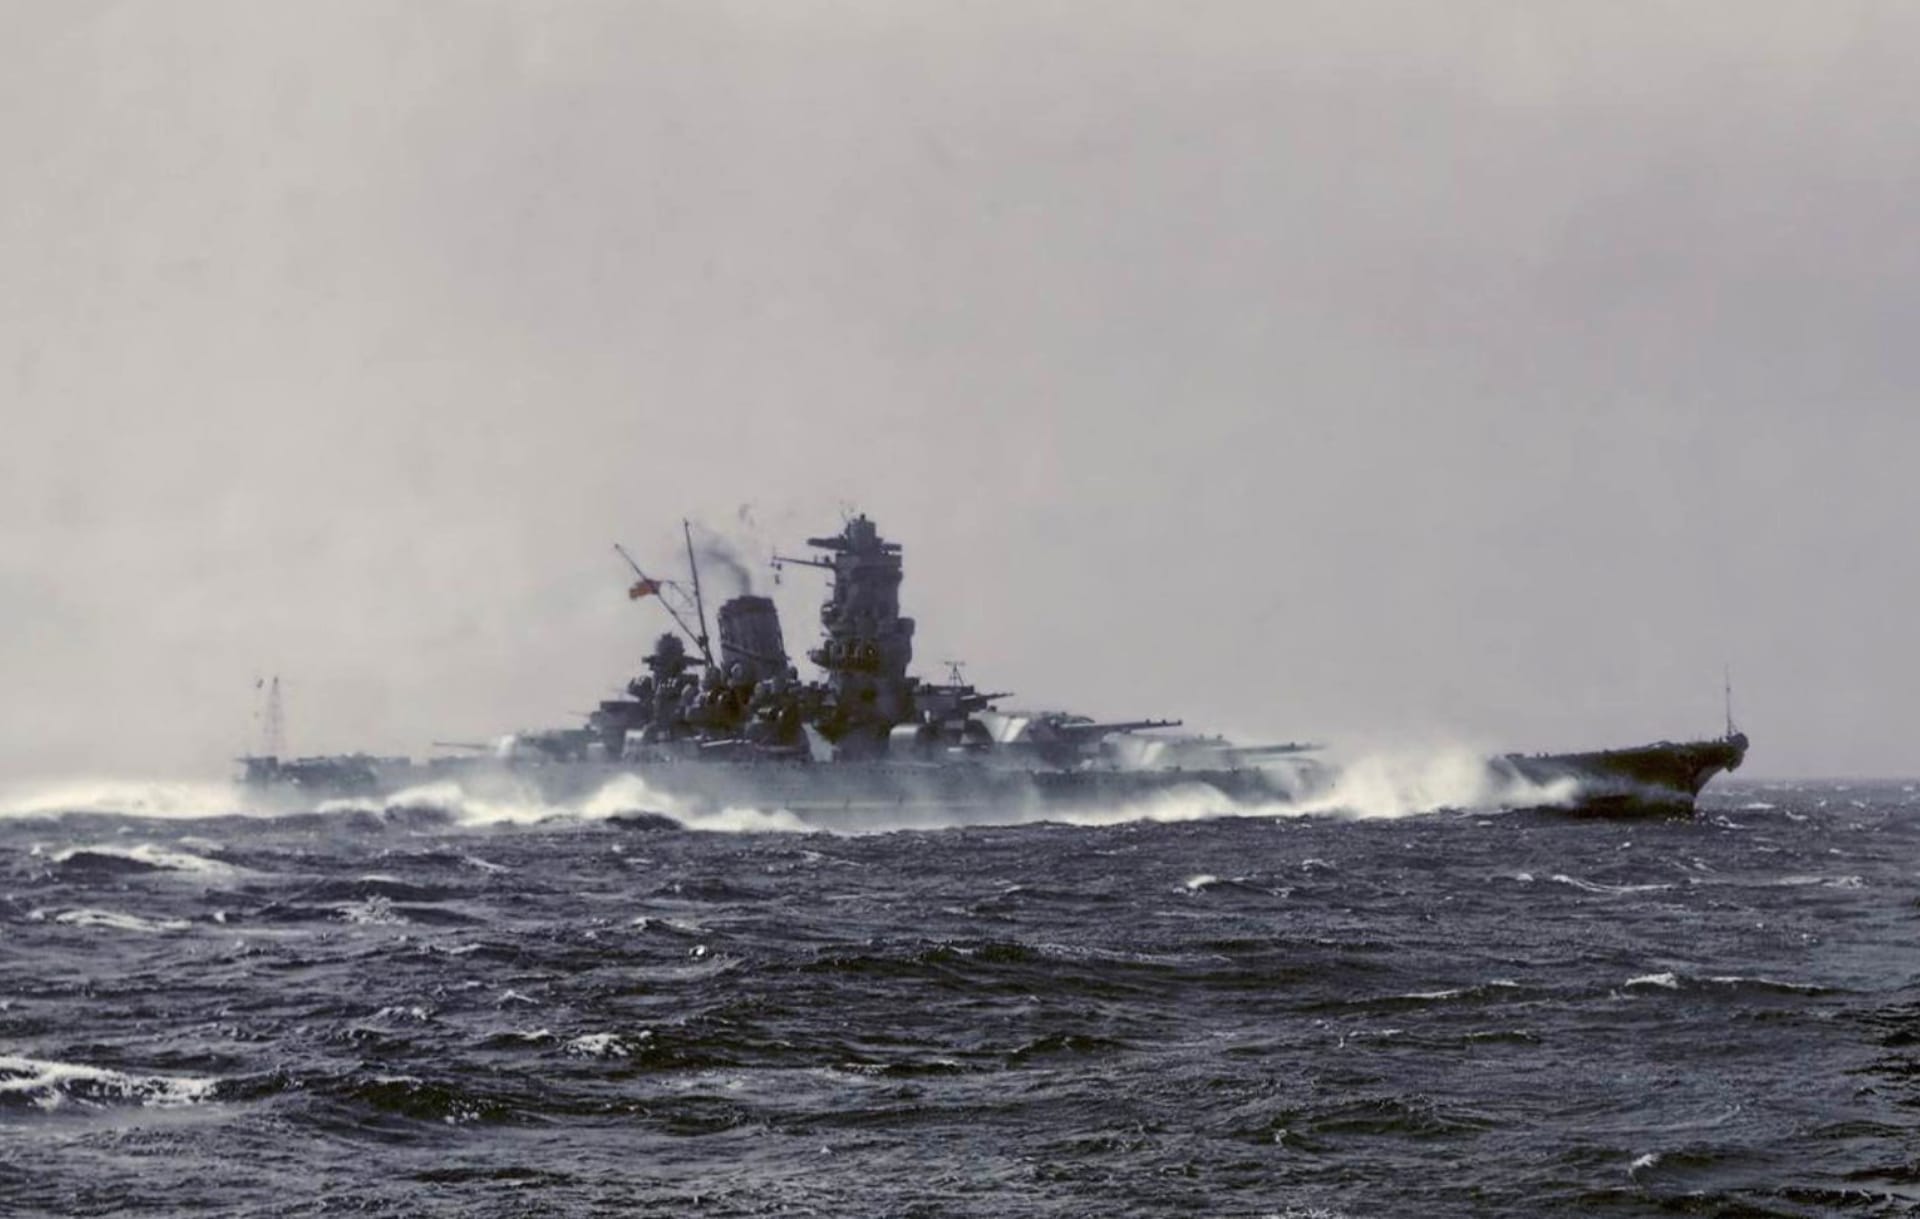 Japanese battleship Yamato at 1152 x 864 size wallpapers HD quality